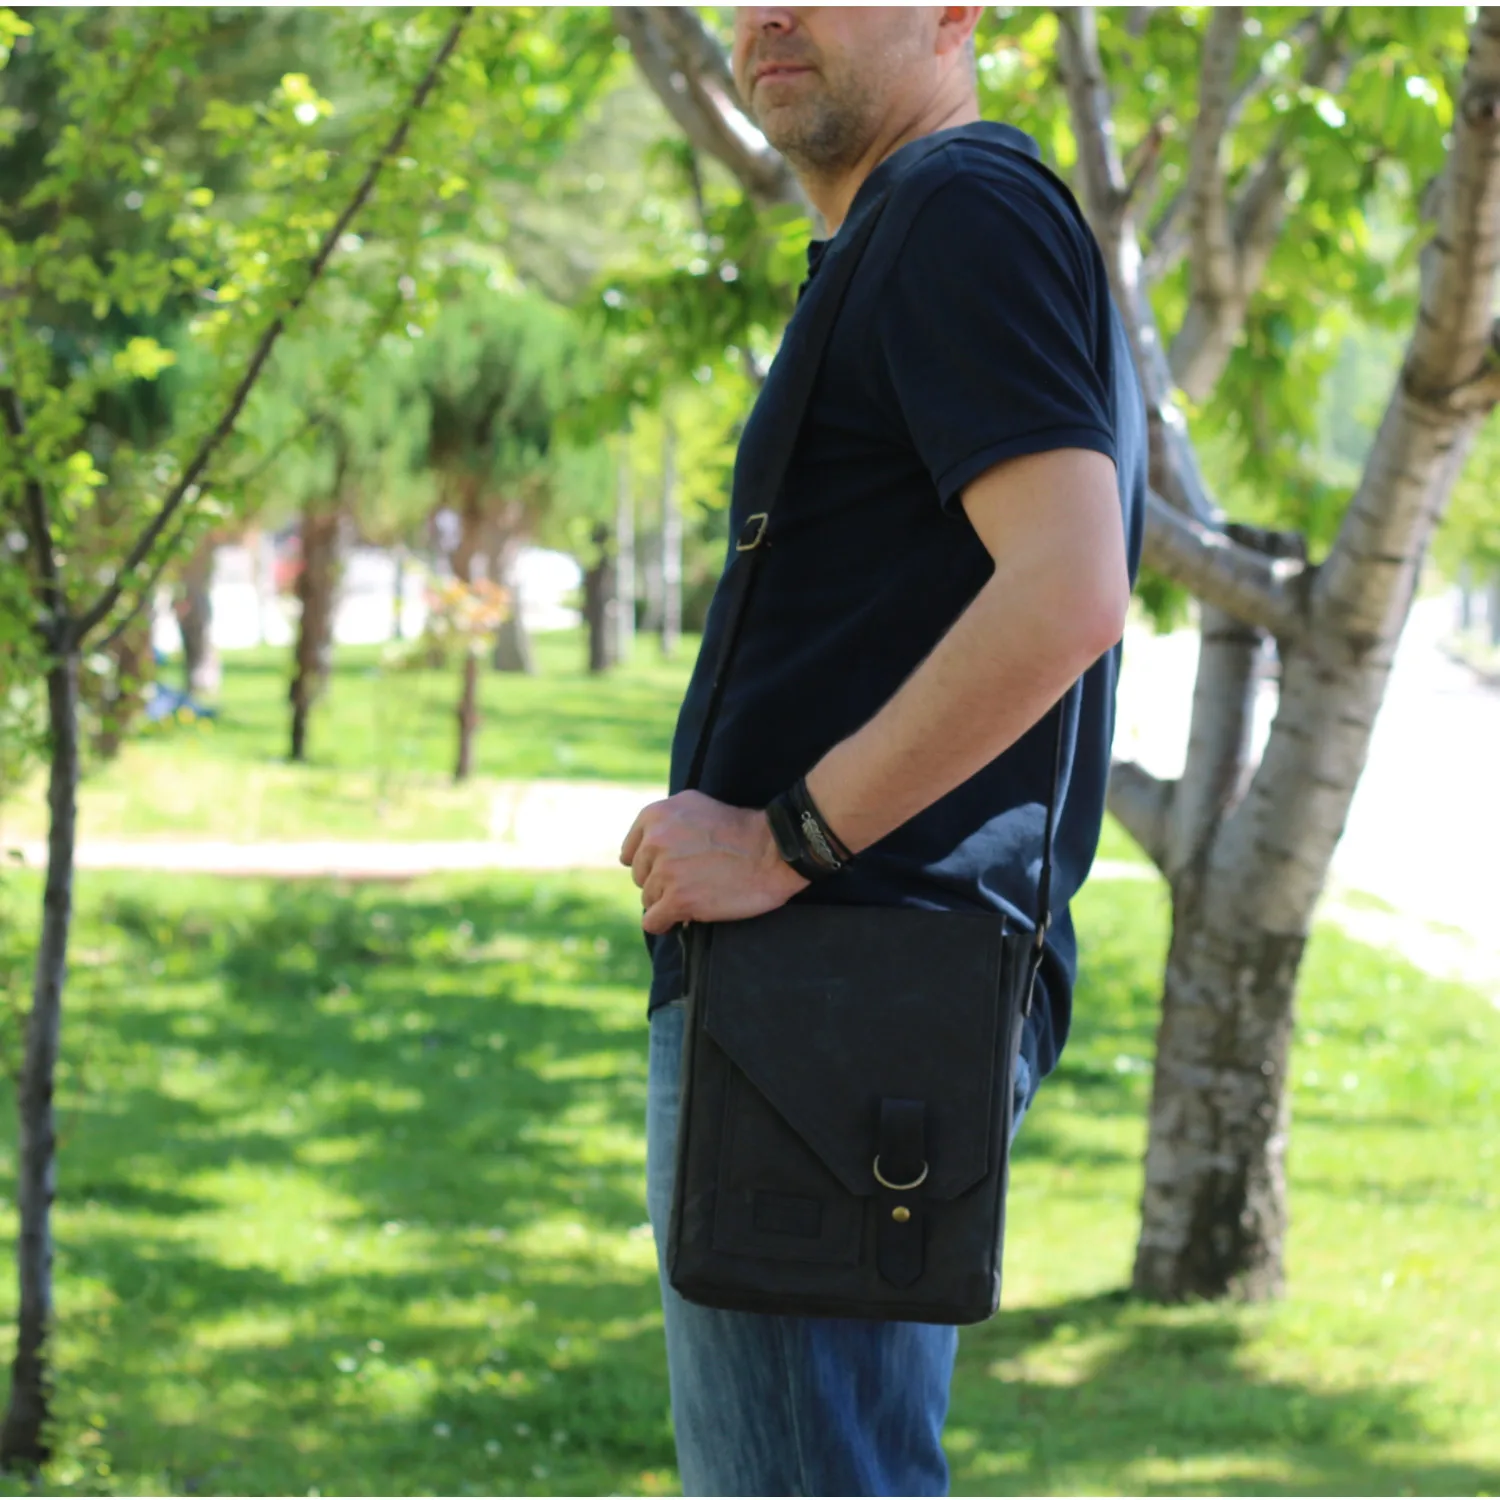 Сумка-мессенджер через плечо для мужчин и женщин, винтажный холщовый рюкзак для планшета из вощеной ткани, водонепроницаемый чехол на плечо... от AliExpress RU&CIS NEW